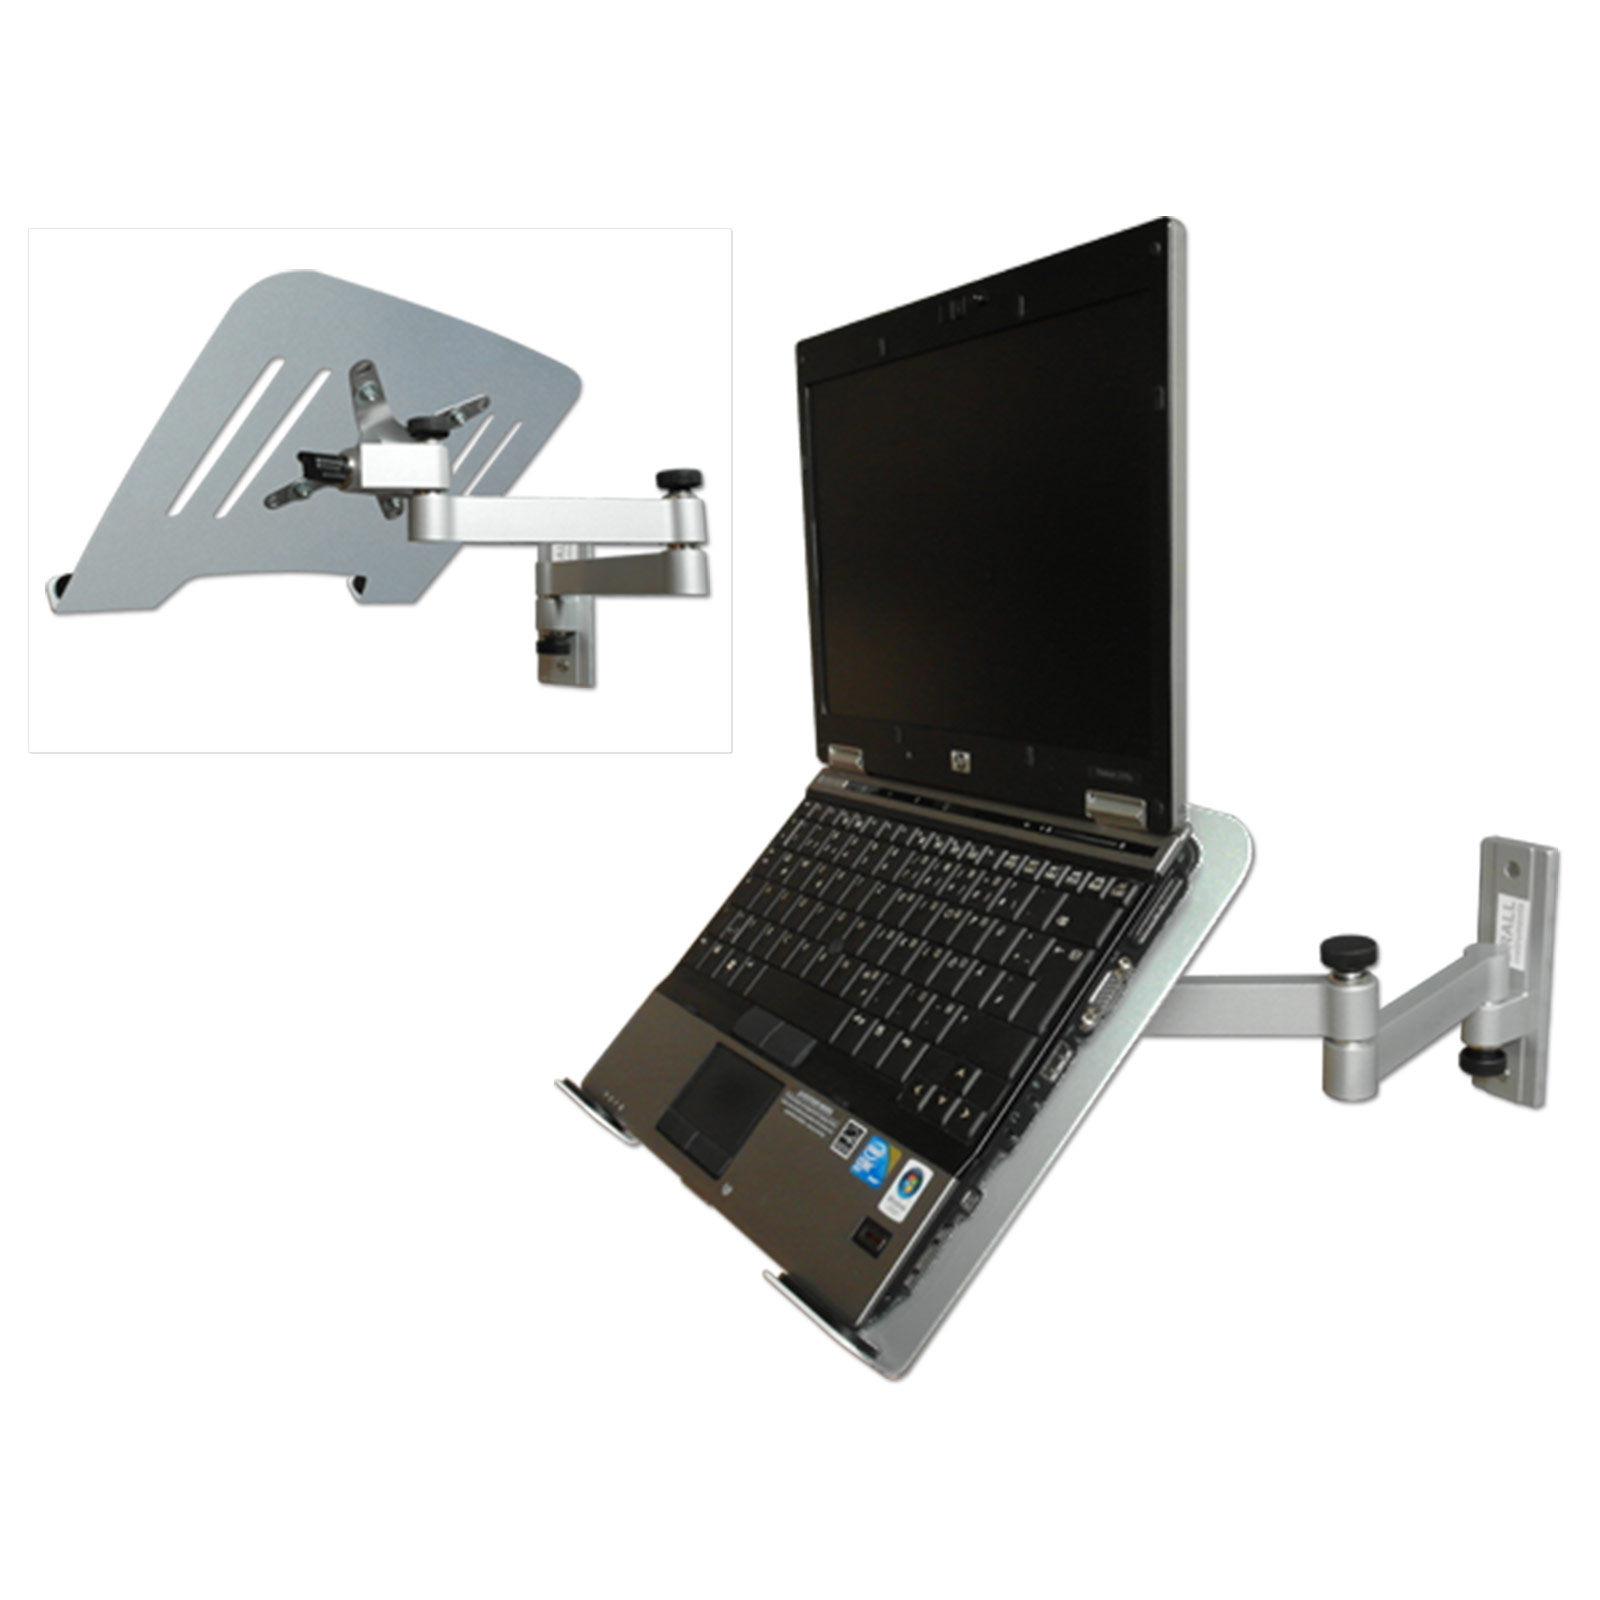 Halterung silber INSTRUMENTS Ablage L52S-IP3S Notebook DRALL silber Laptop mit Wandhalterung Modell: Wandhalterung Adapterplatte